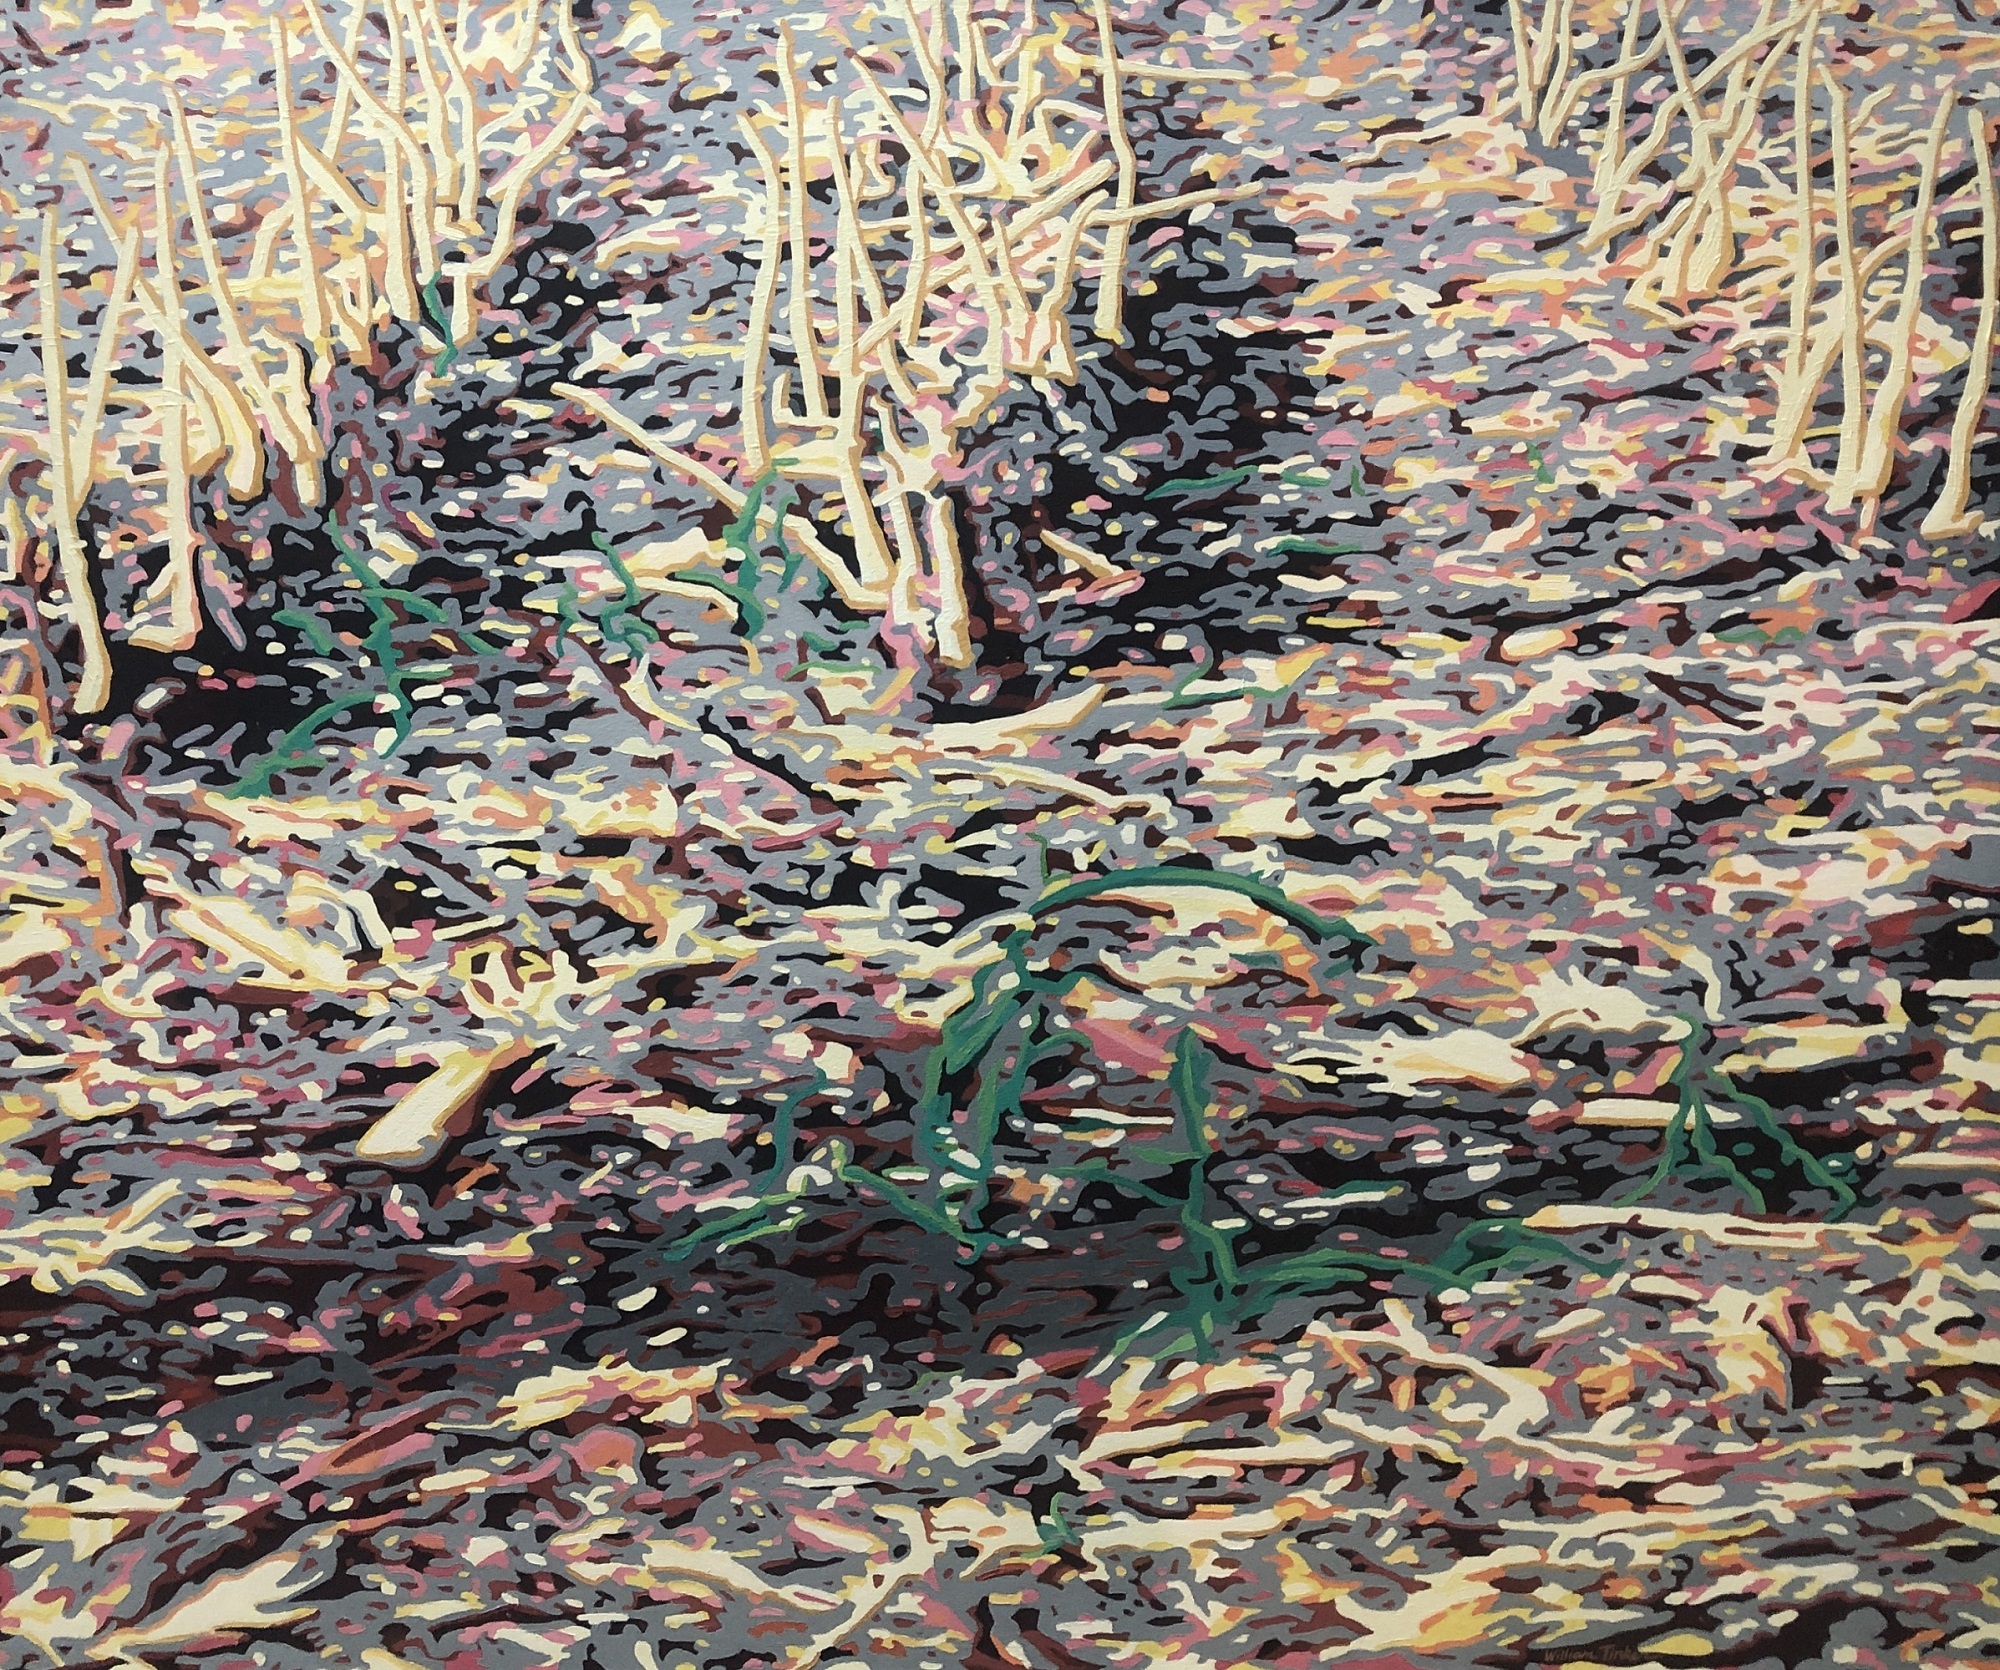 William Tinker, “Fresh Cut Ethanol 7”, oil on canvas